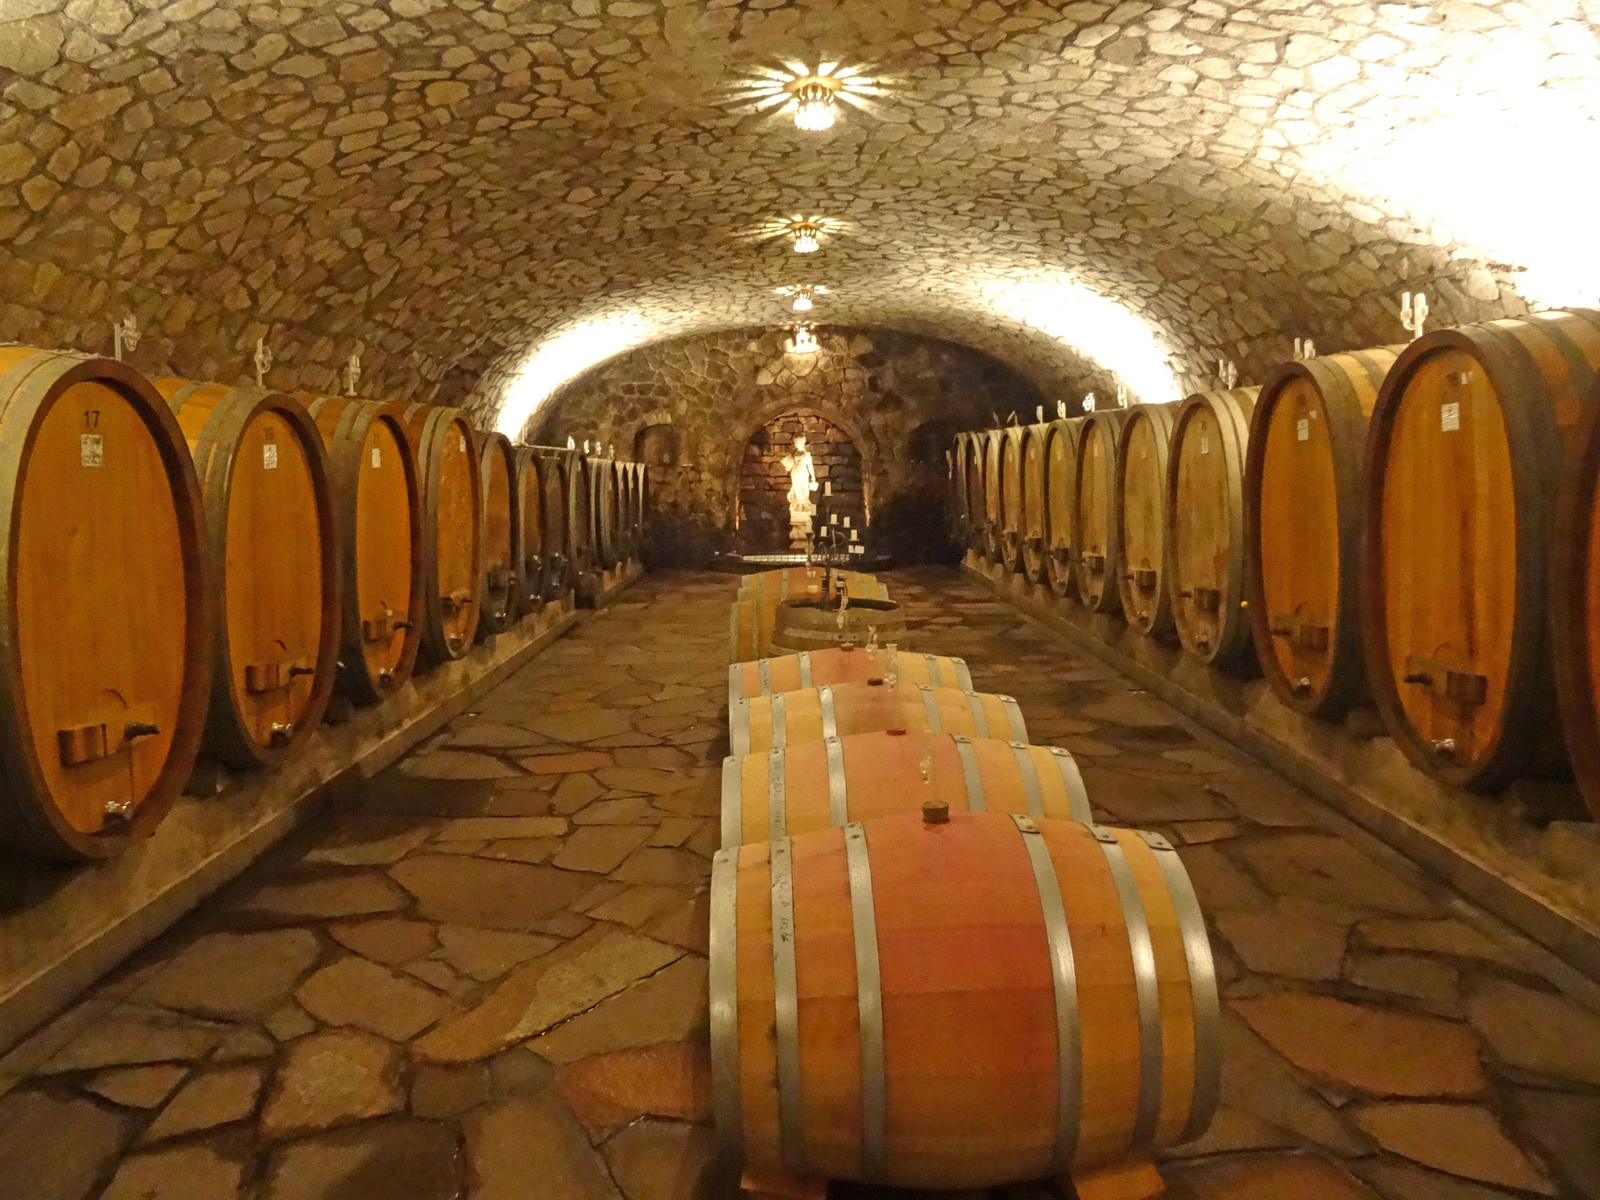 Männles Weinkeller: der größte naturstein gemauerte und freitragende Gewölbekeller der Ortenau